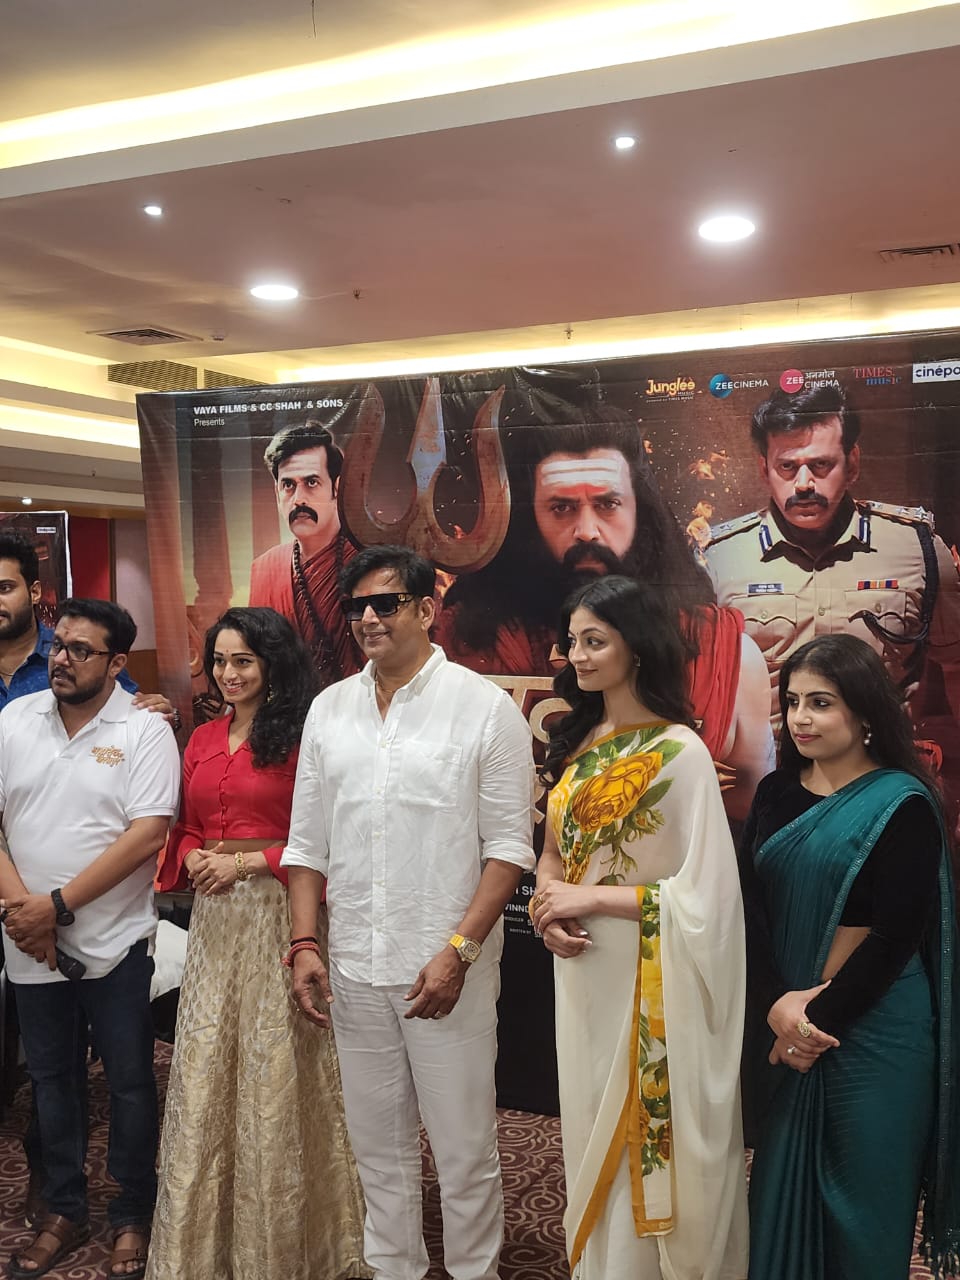 गोरखपुर में हुआ रवि किशन की फिल्म ‘महादेव का गोरखपुर’ का ग्रैंड प्रीमियर, अमेरिका-मॉरीशस समेत पैन इंडिया में होगी रिलीज